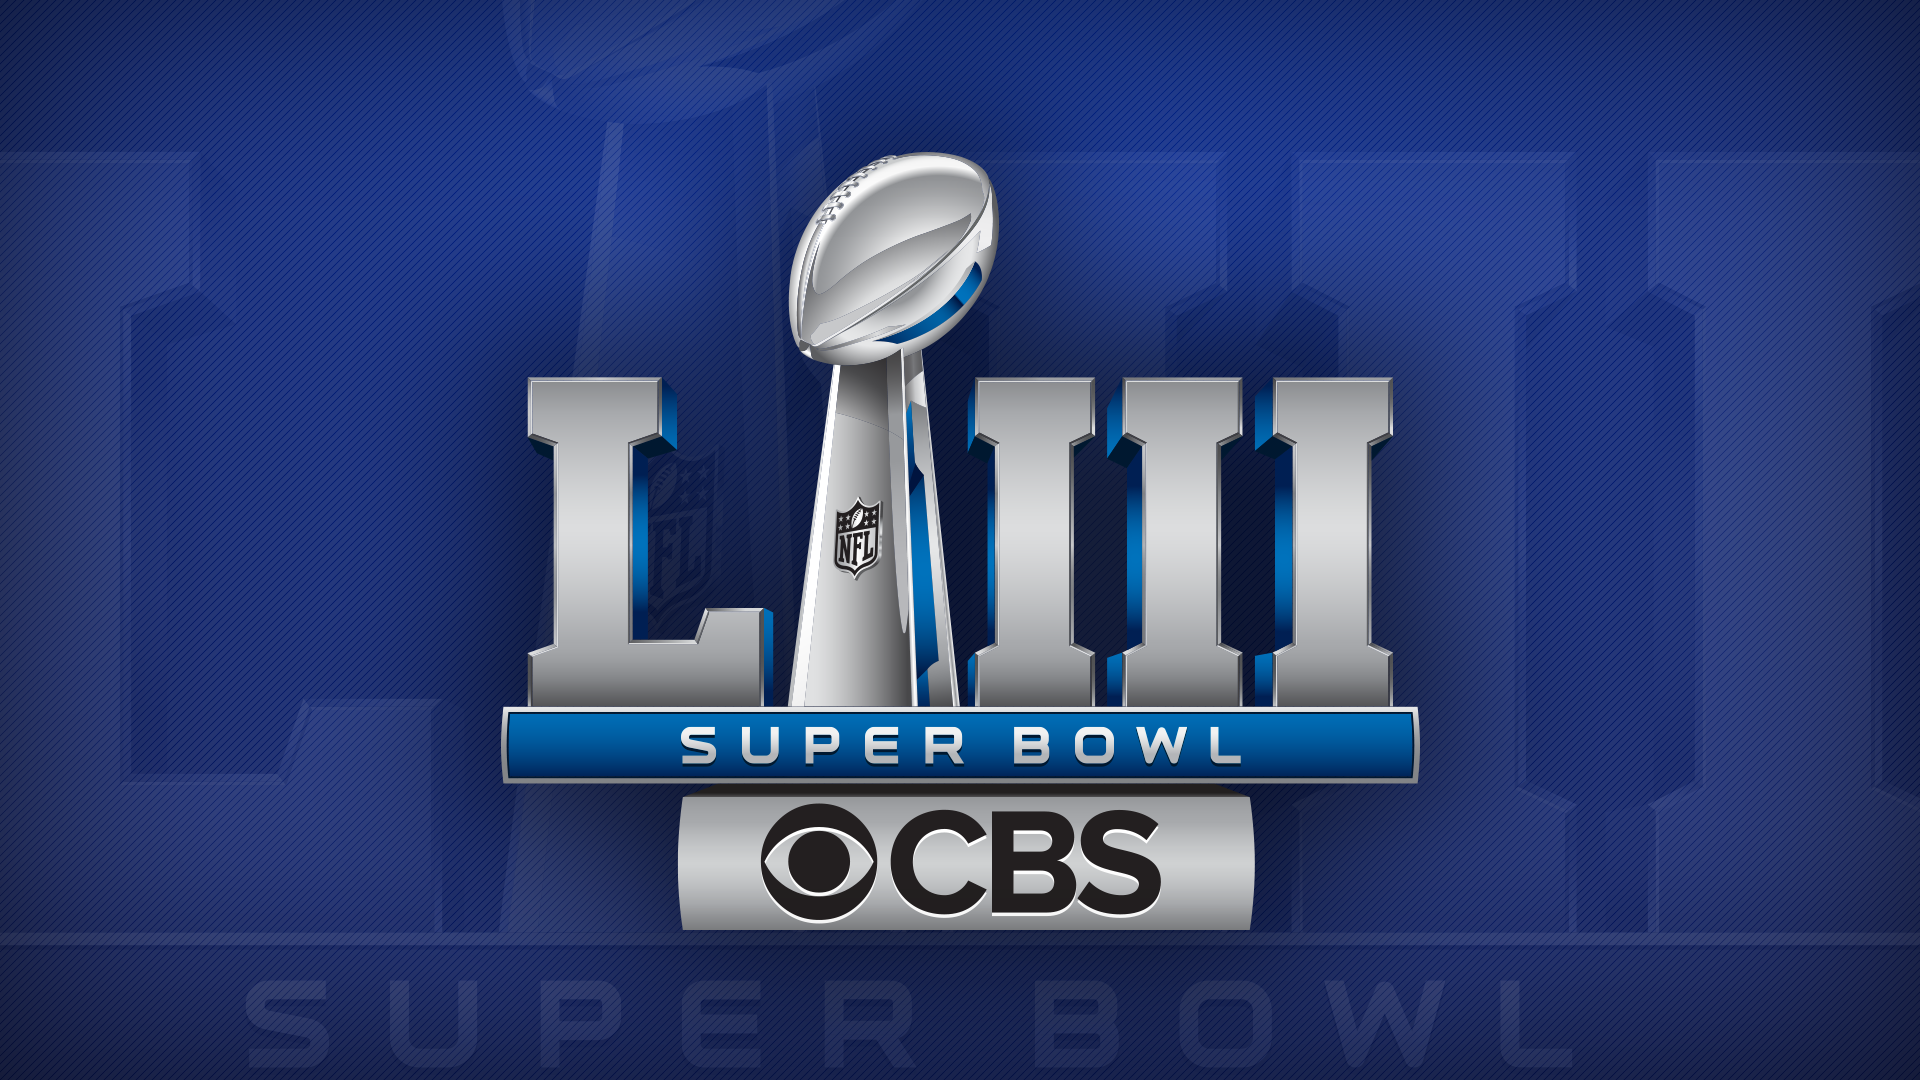 Super Bowl - CBS